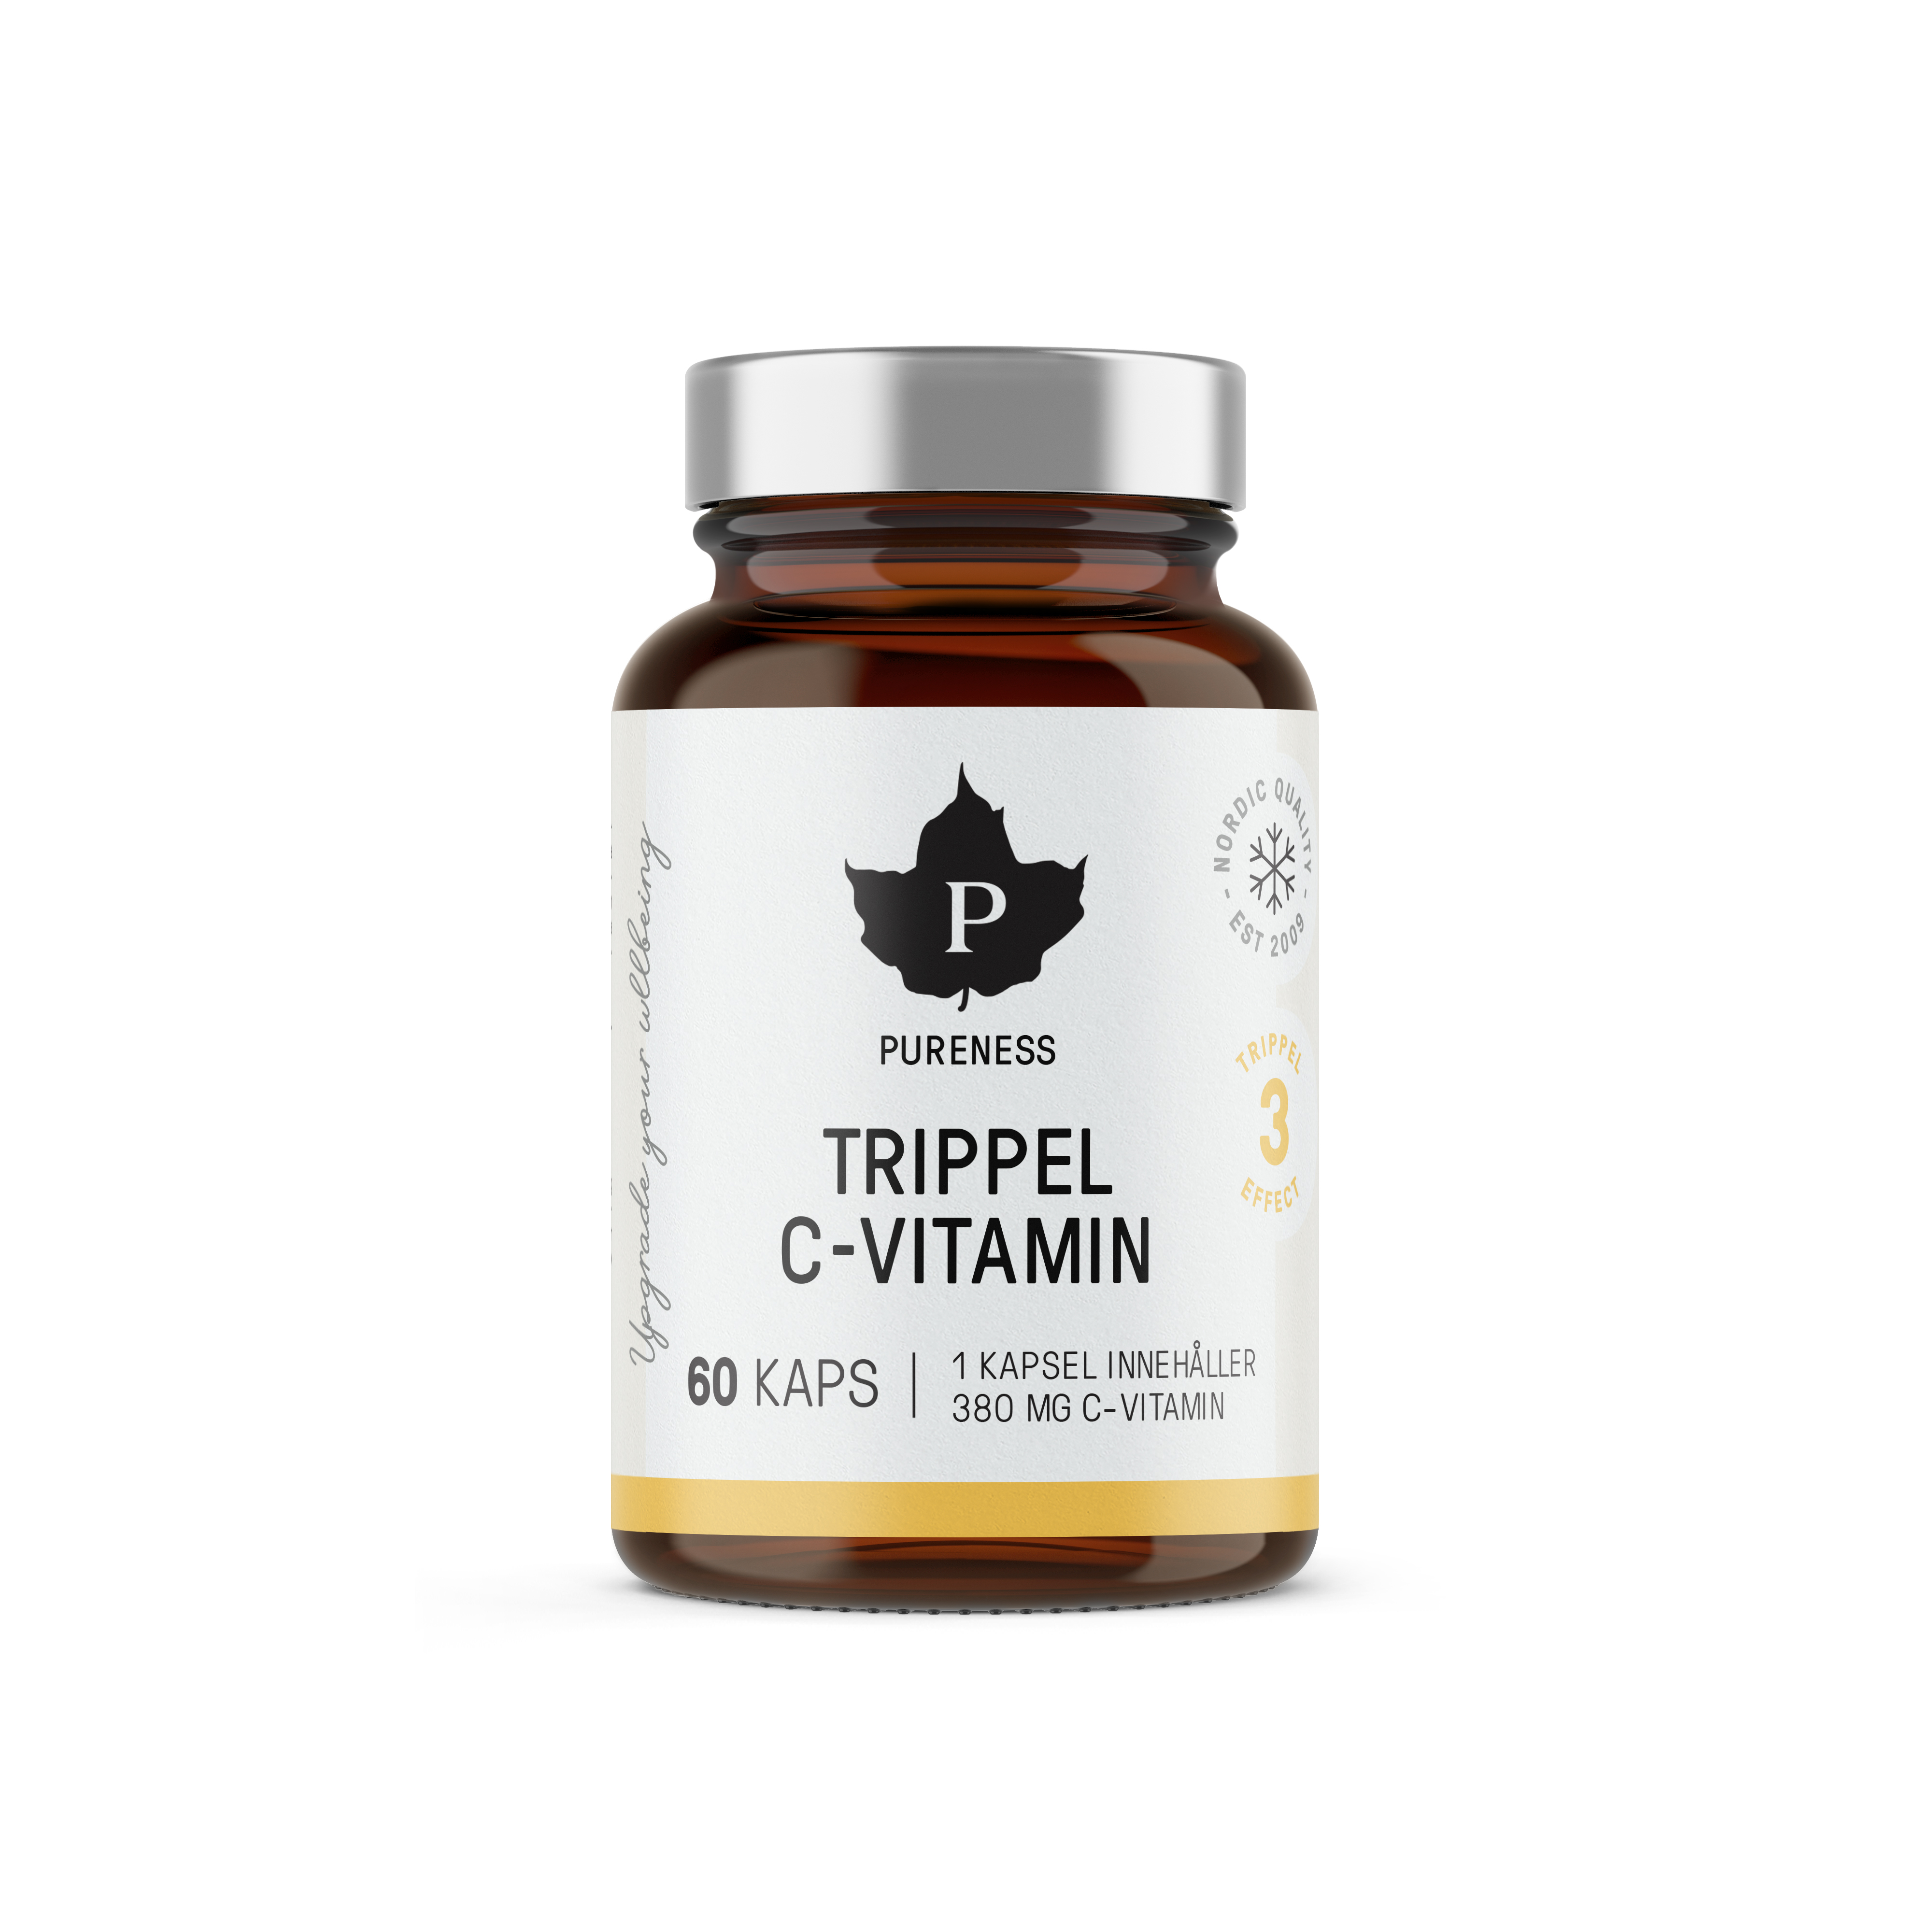 Pureness Trippel C-vitamin 60 st